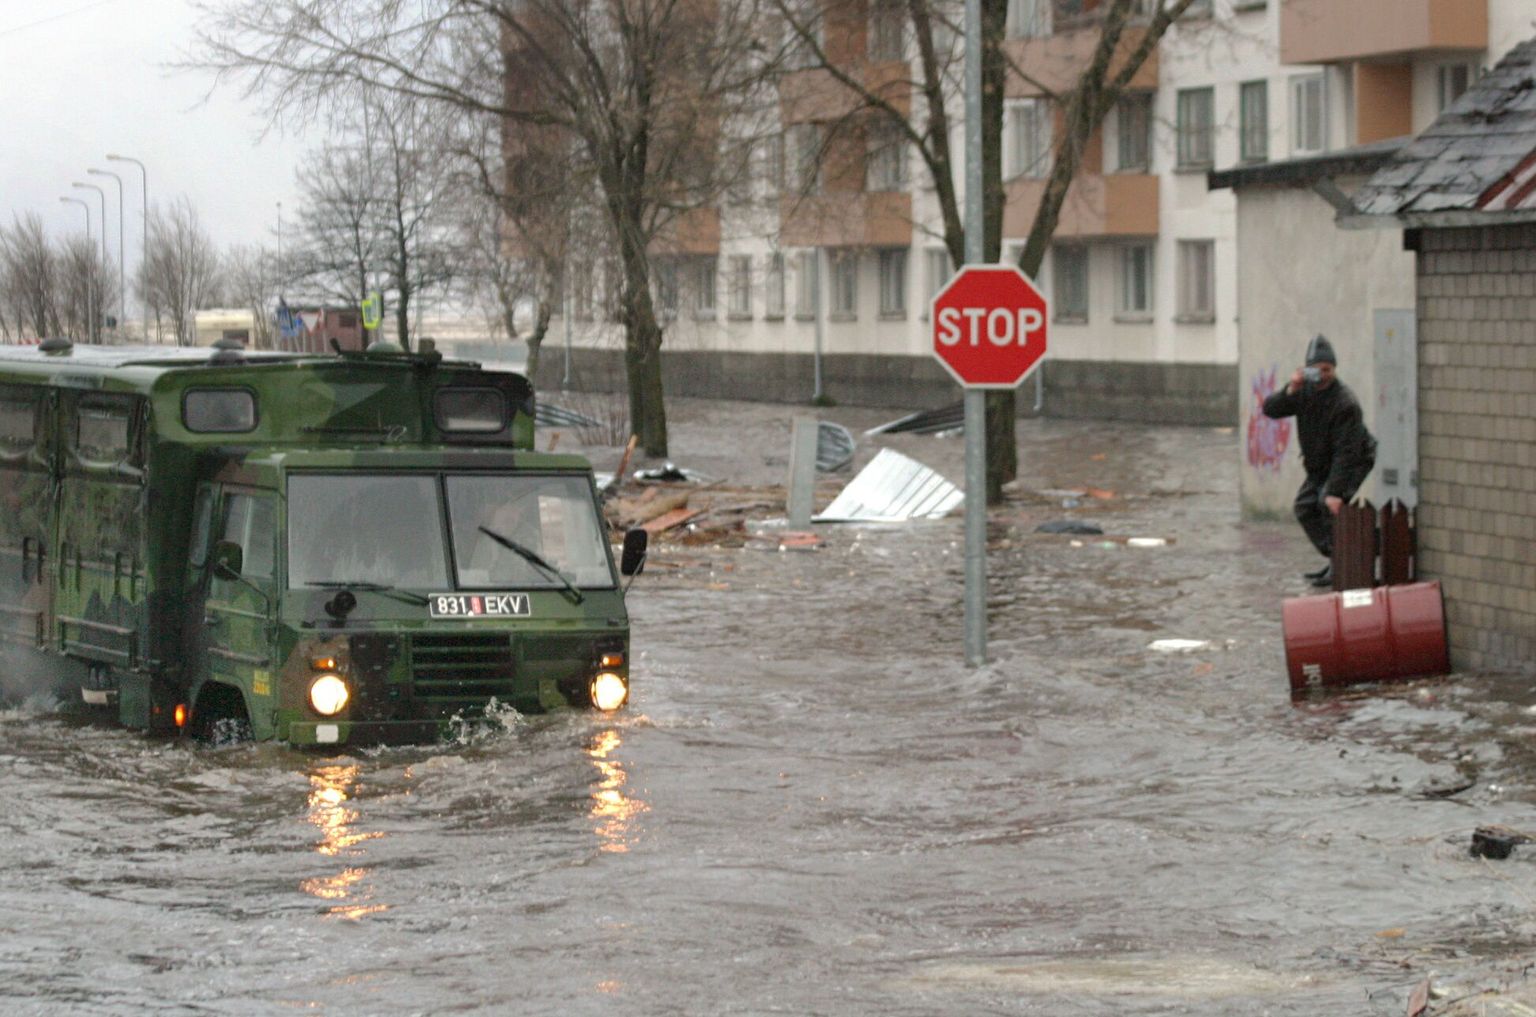 Neli aastat tagasi jaanuaritormi ajal ujutas meri Pärnu linna rannaäärsed alad üle.